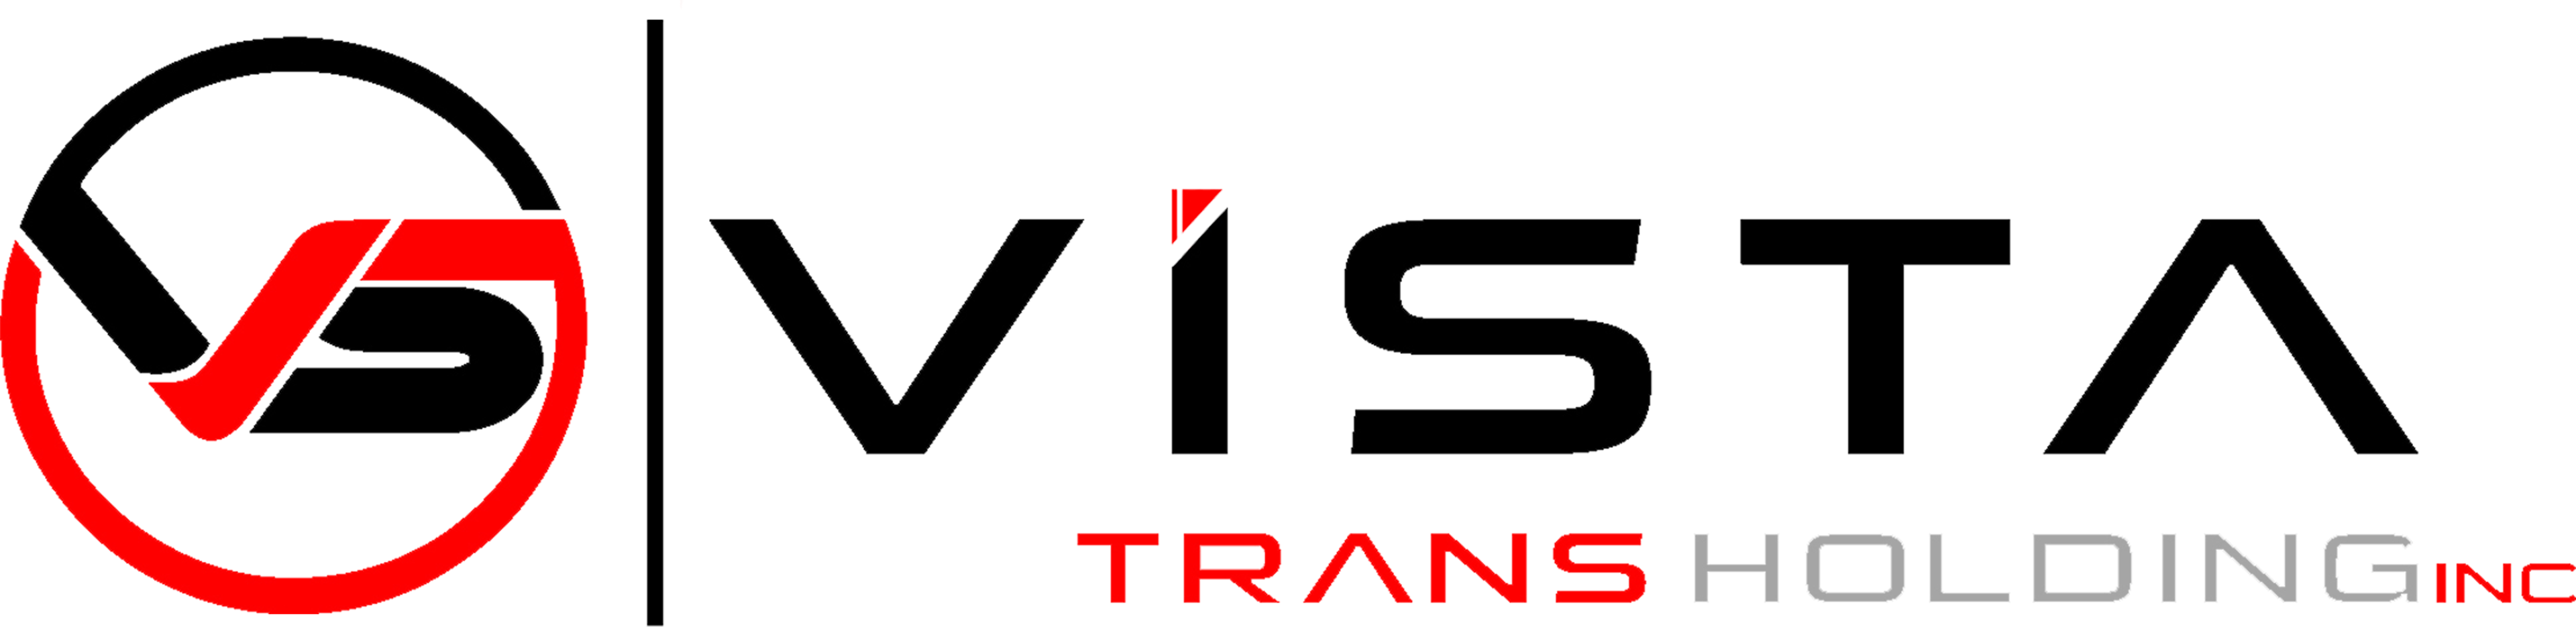 Vista Trans Holding logo